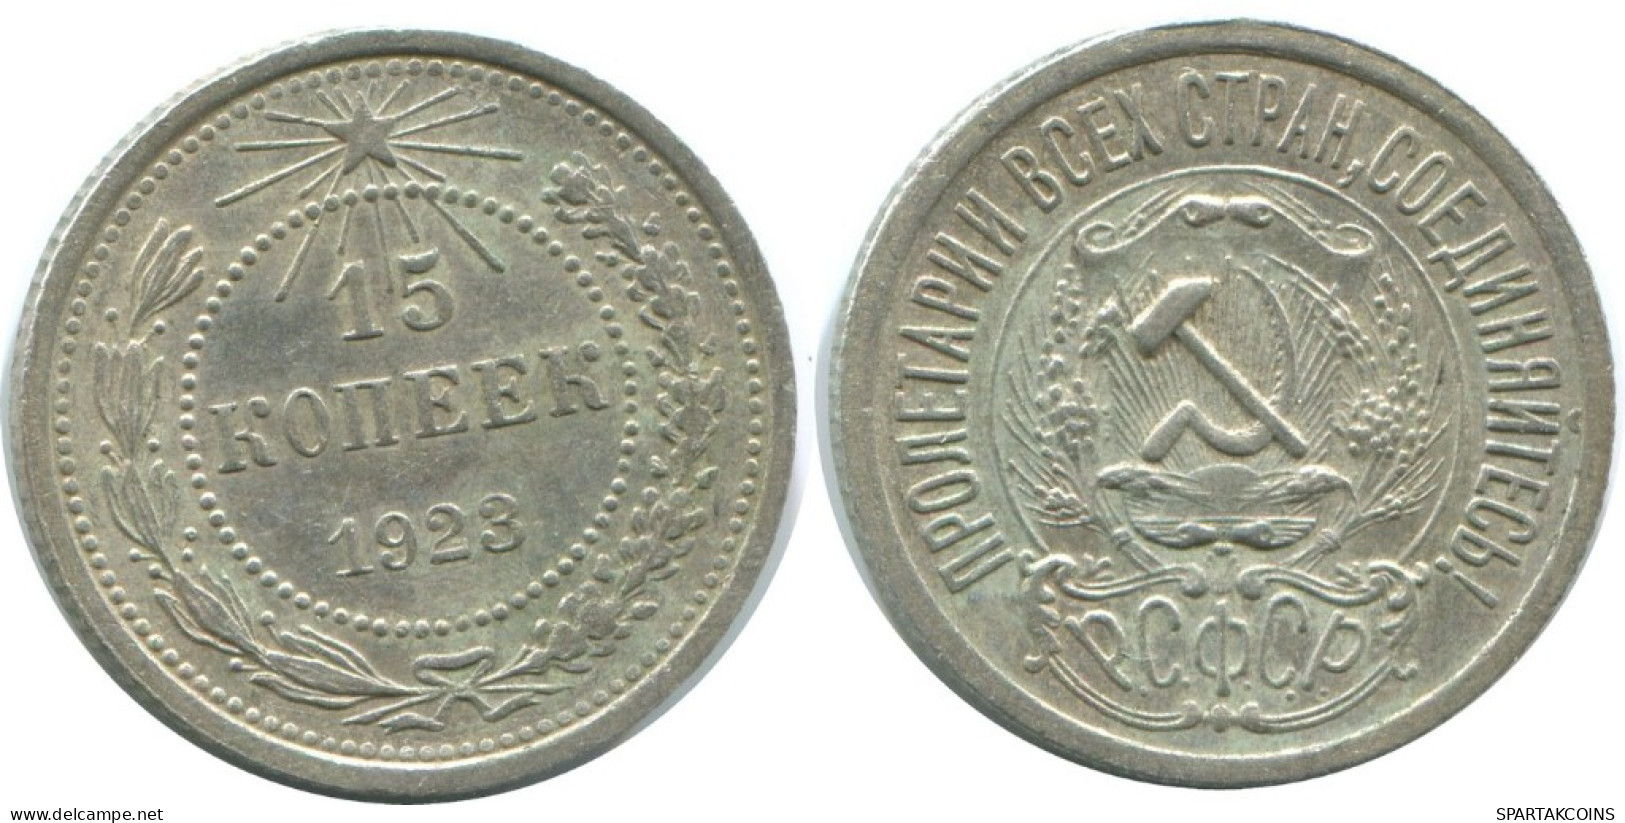 15 KOPEKS 1923 RUSSLAND RUSSIA RSFSR SILBER Münze HIGH GRADE #AF143.4.D.A - Russia